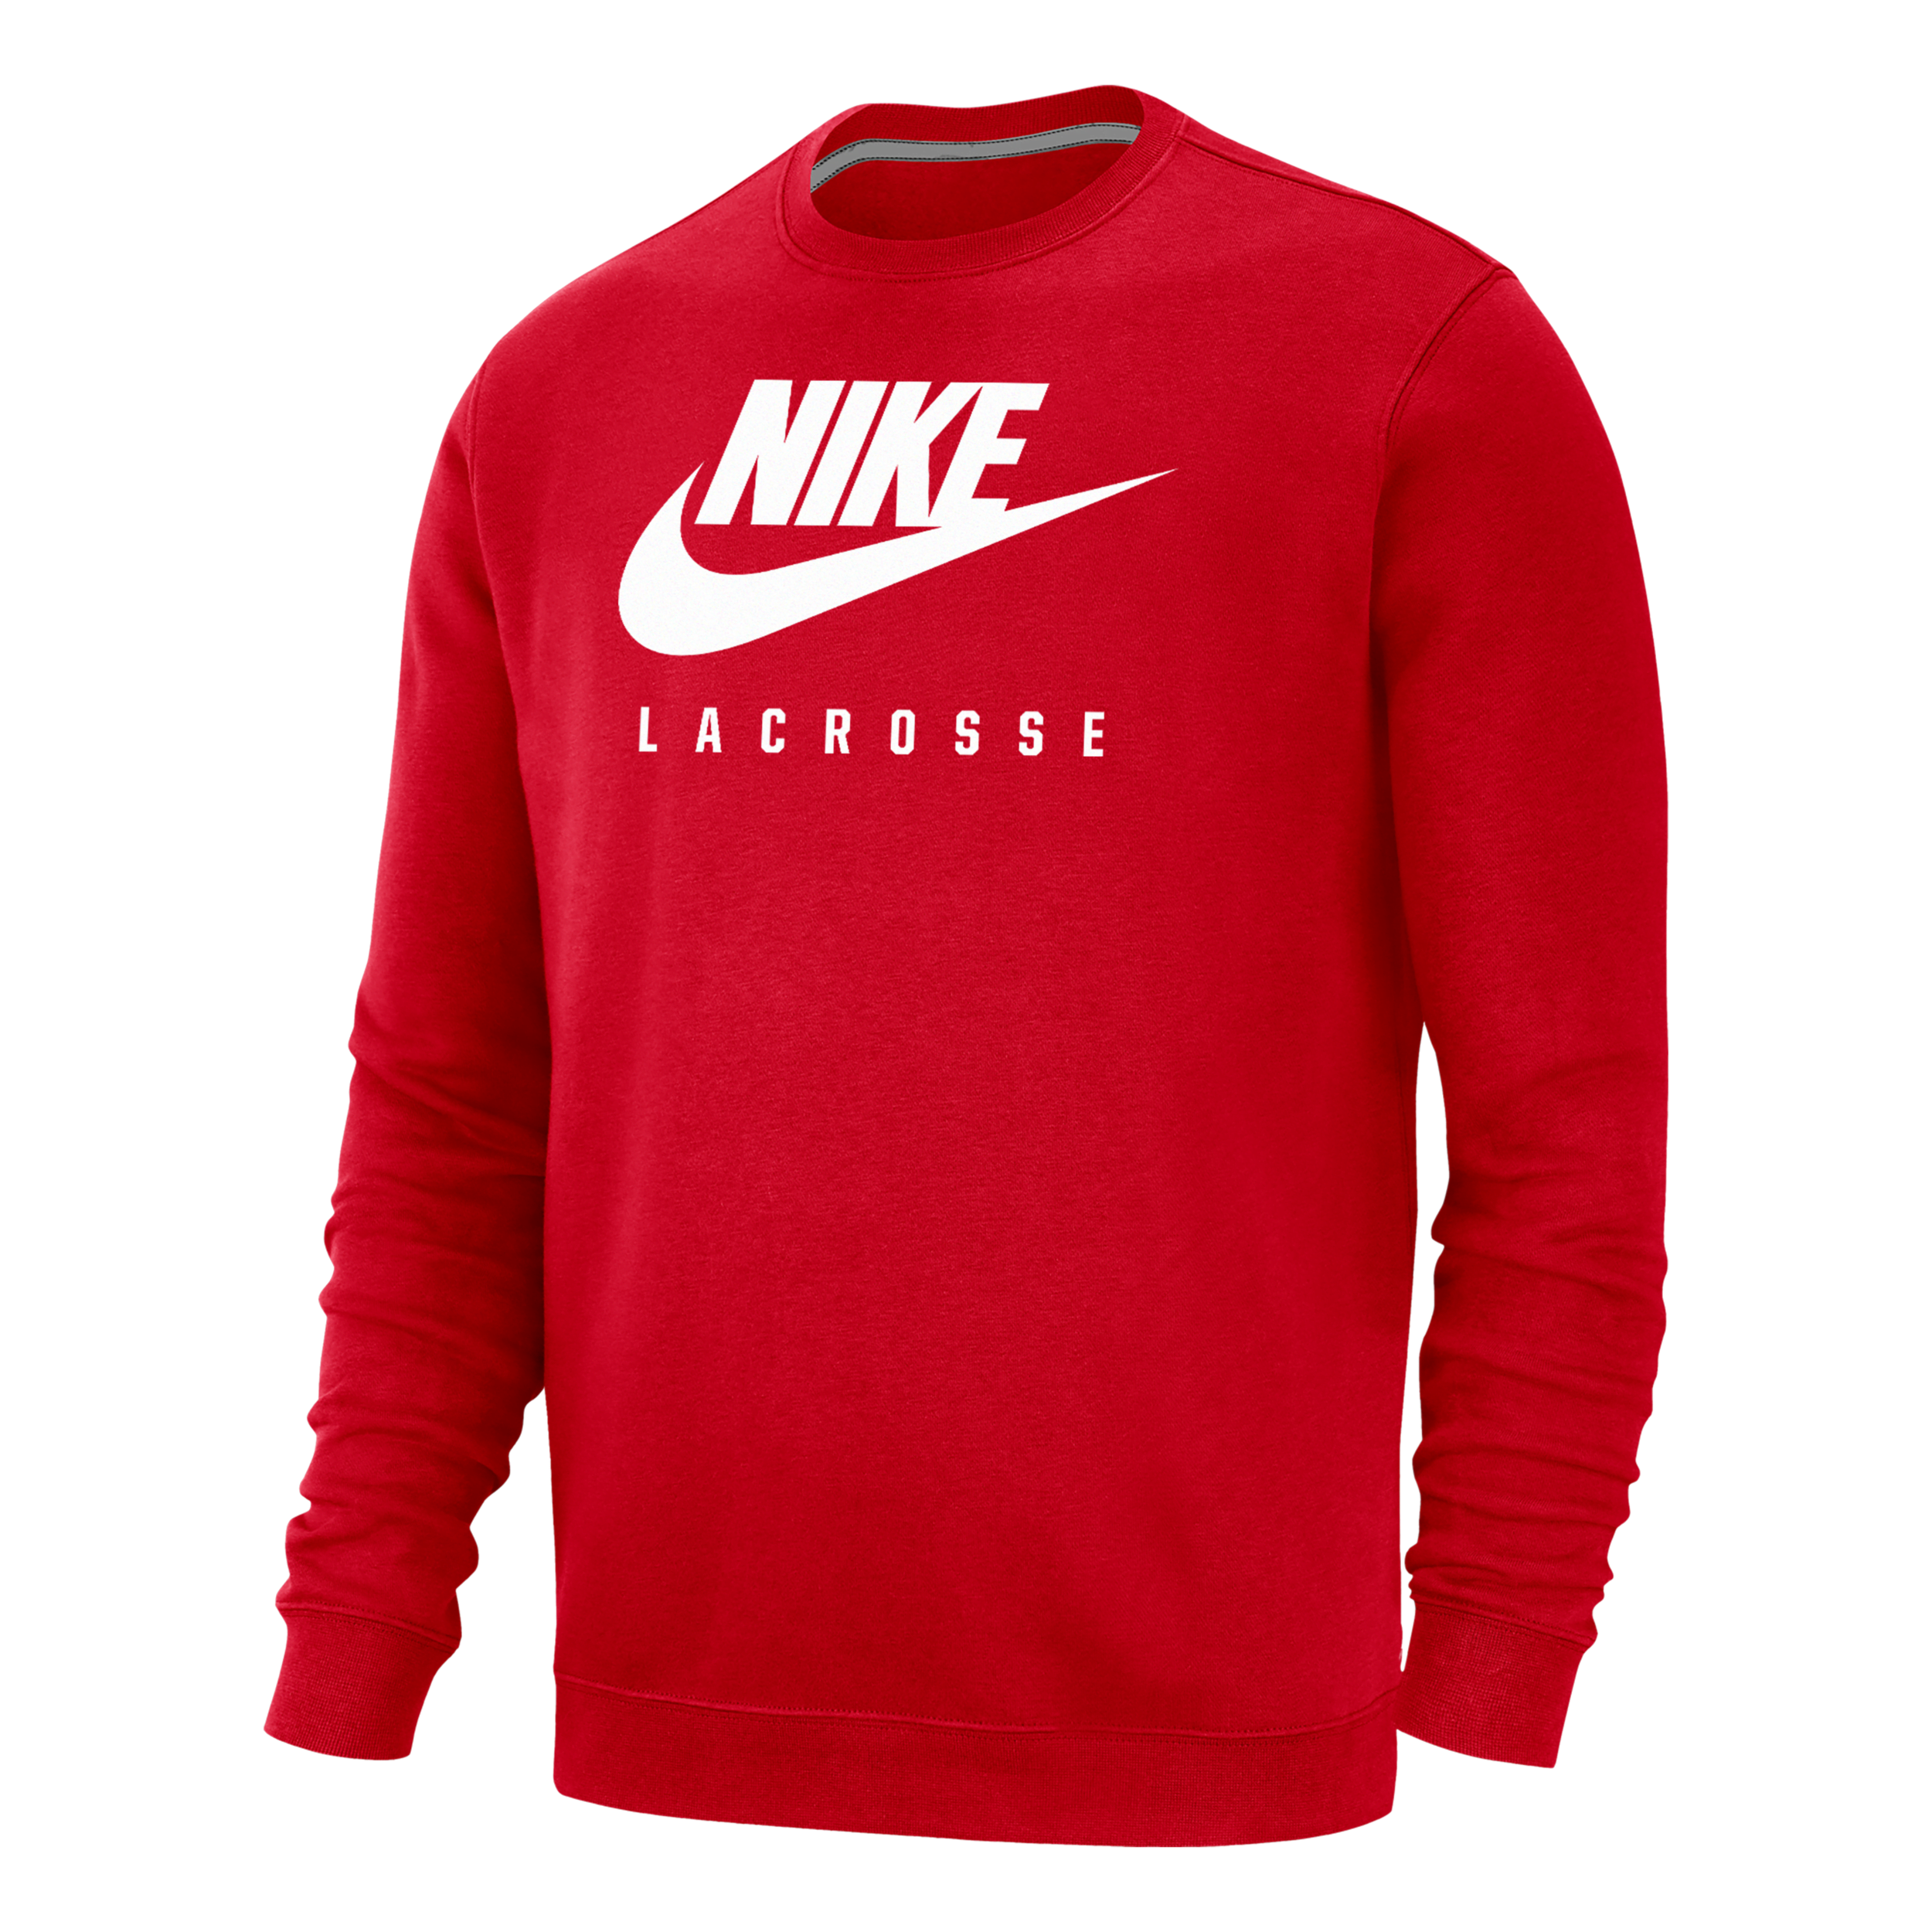 Nike Men's Swoosh Lacrosse Crew-neck Sweatshirt In Red